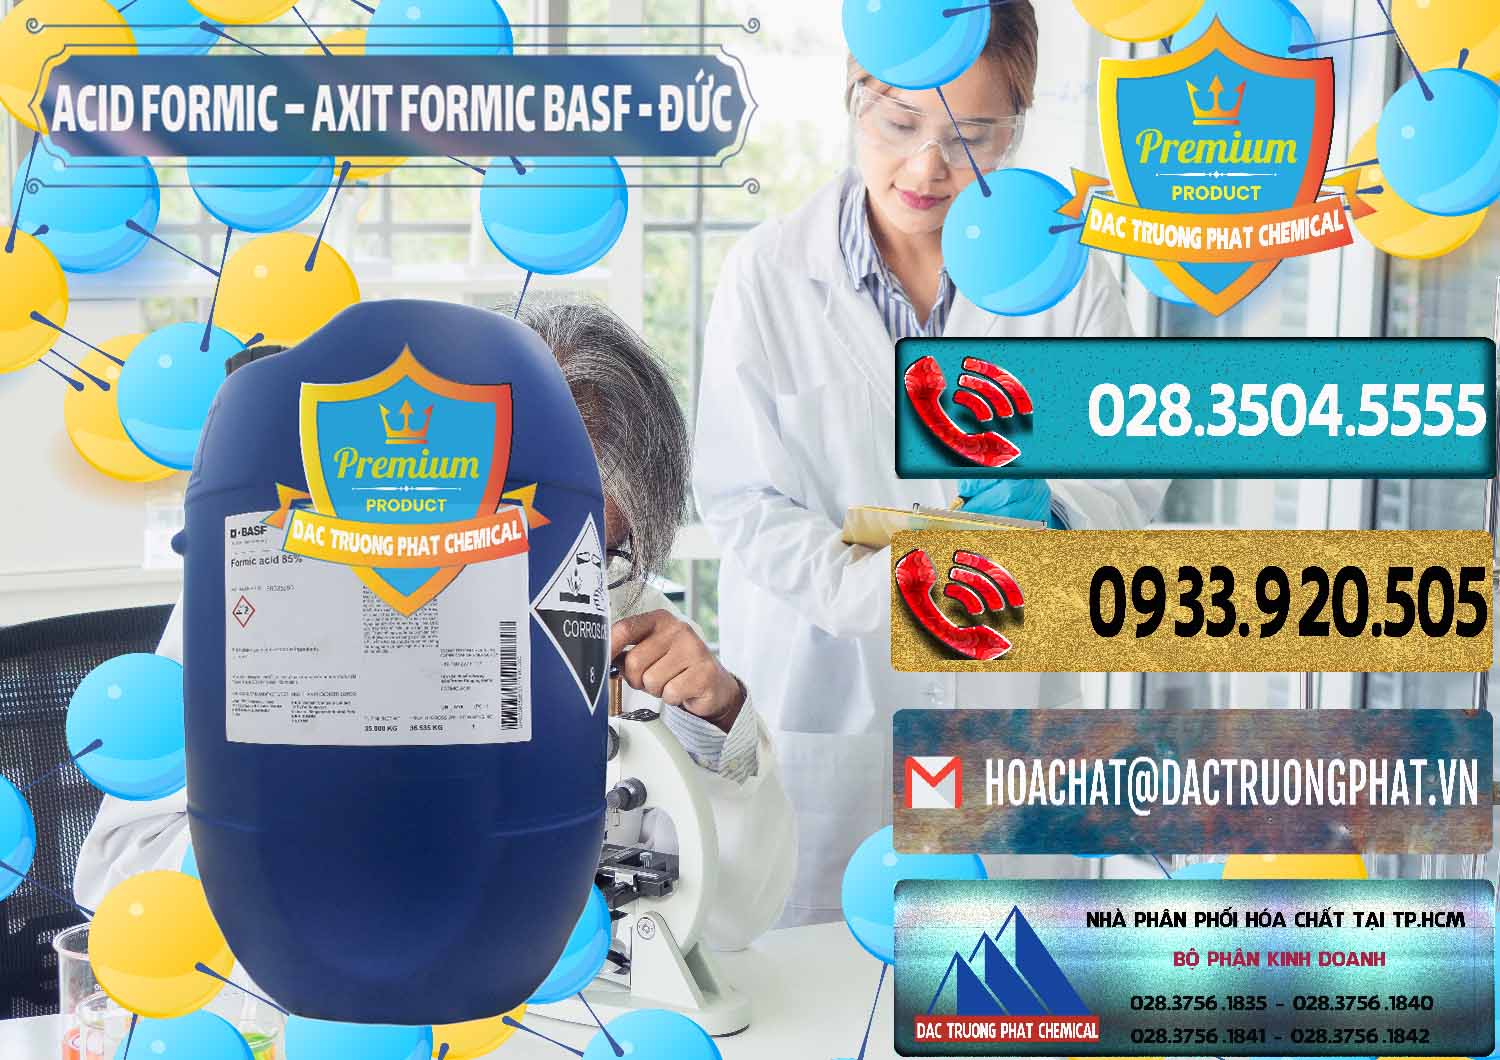 Cty cung cấp - bán Acid Formic - Axit Formic BASF Đức Germany - 0028 - Nơi phân phối và cung cấp hóa chất tại TP.HCM - hoachatdetnhuom.com